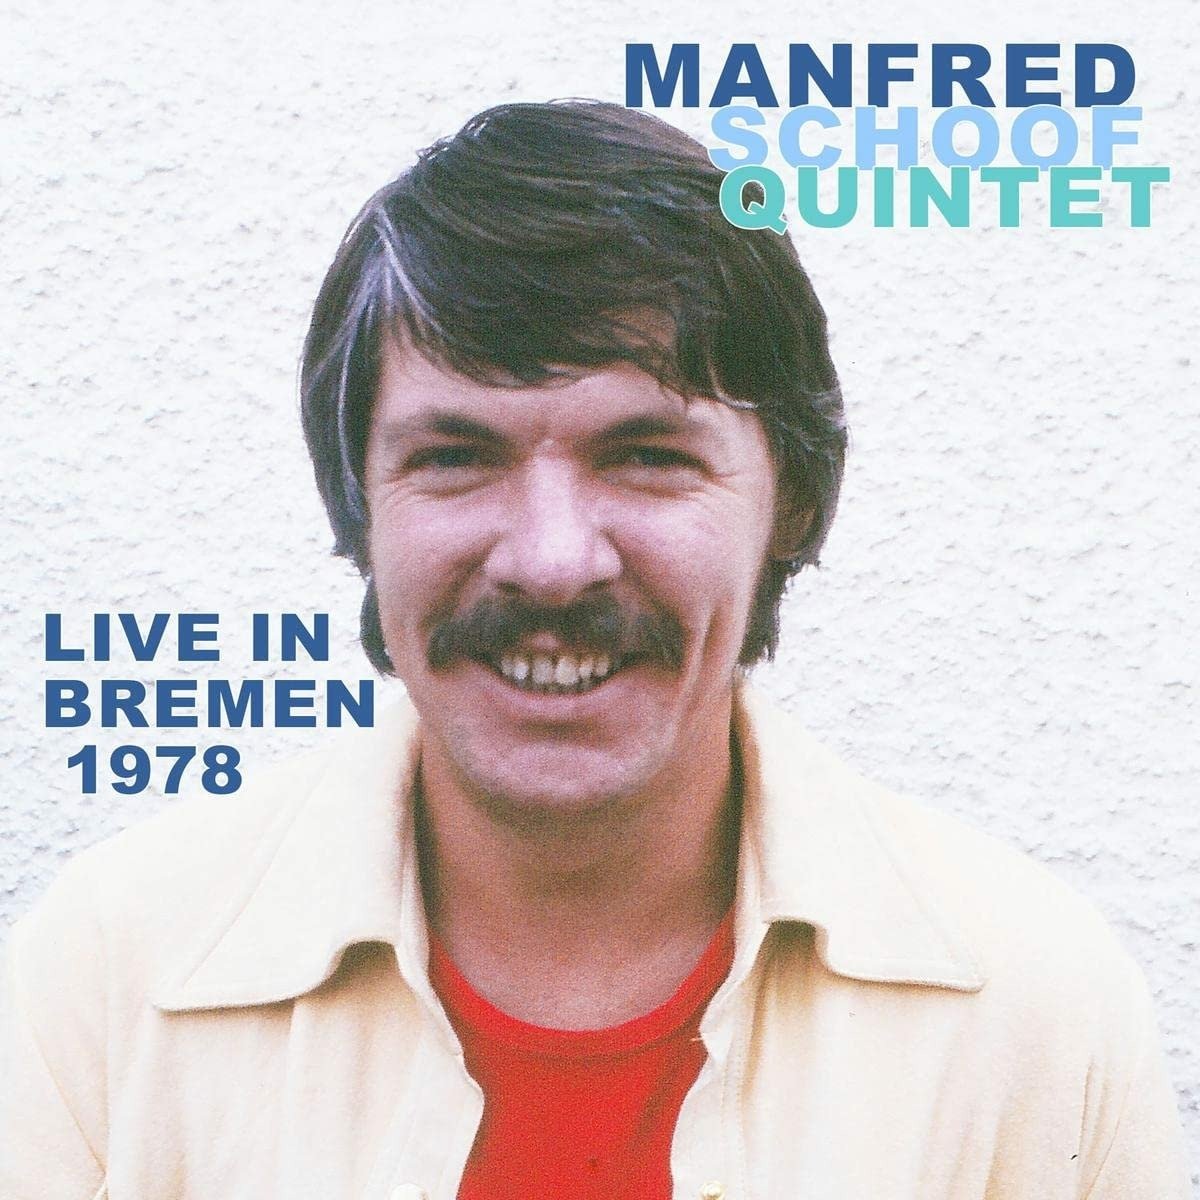 SCHOOF, MANFRED -QUINTET- - LIVE IN BREMEN 1978, CD